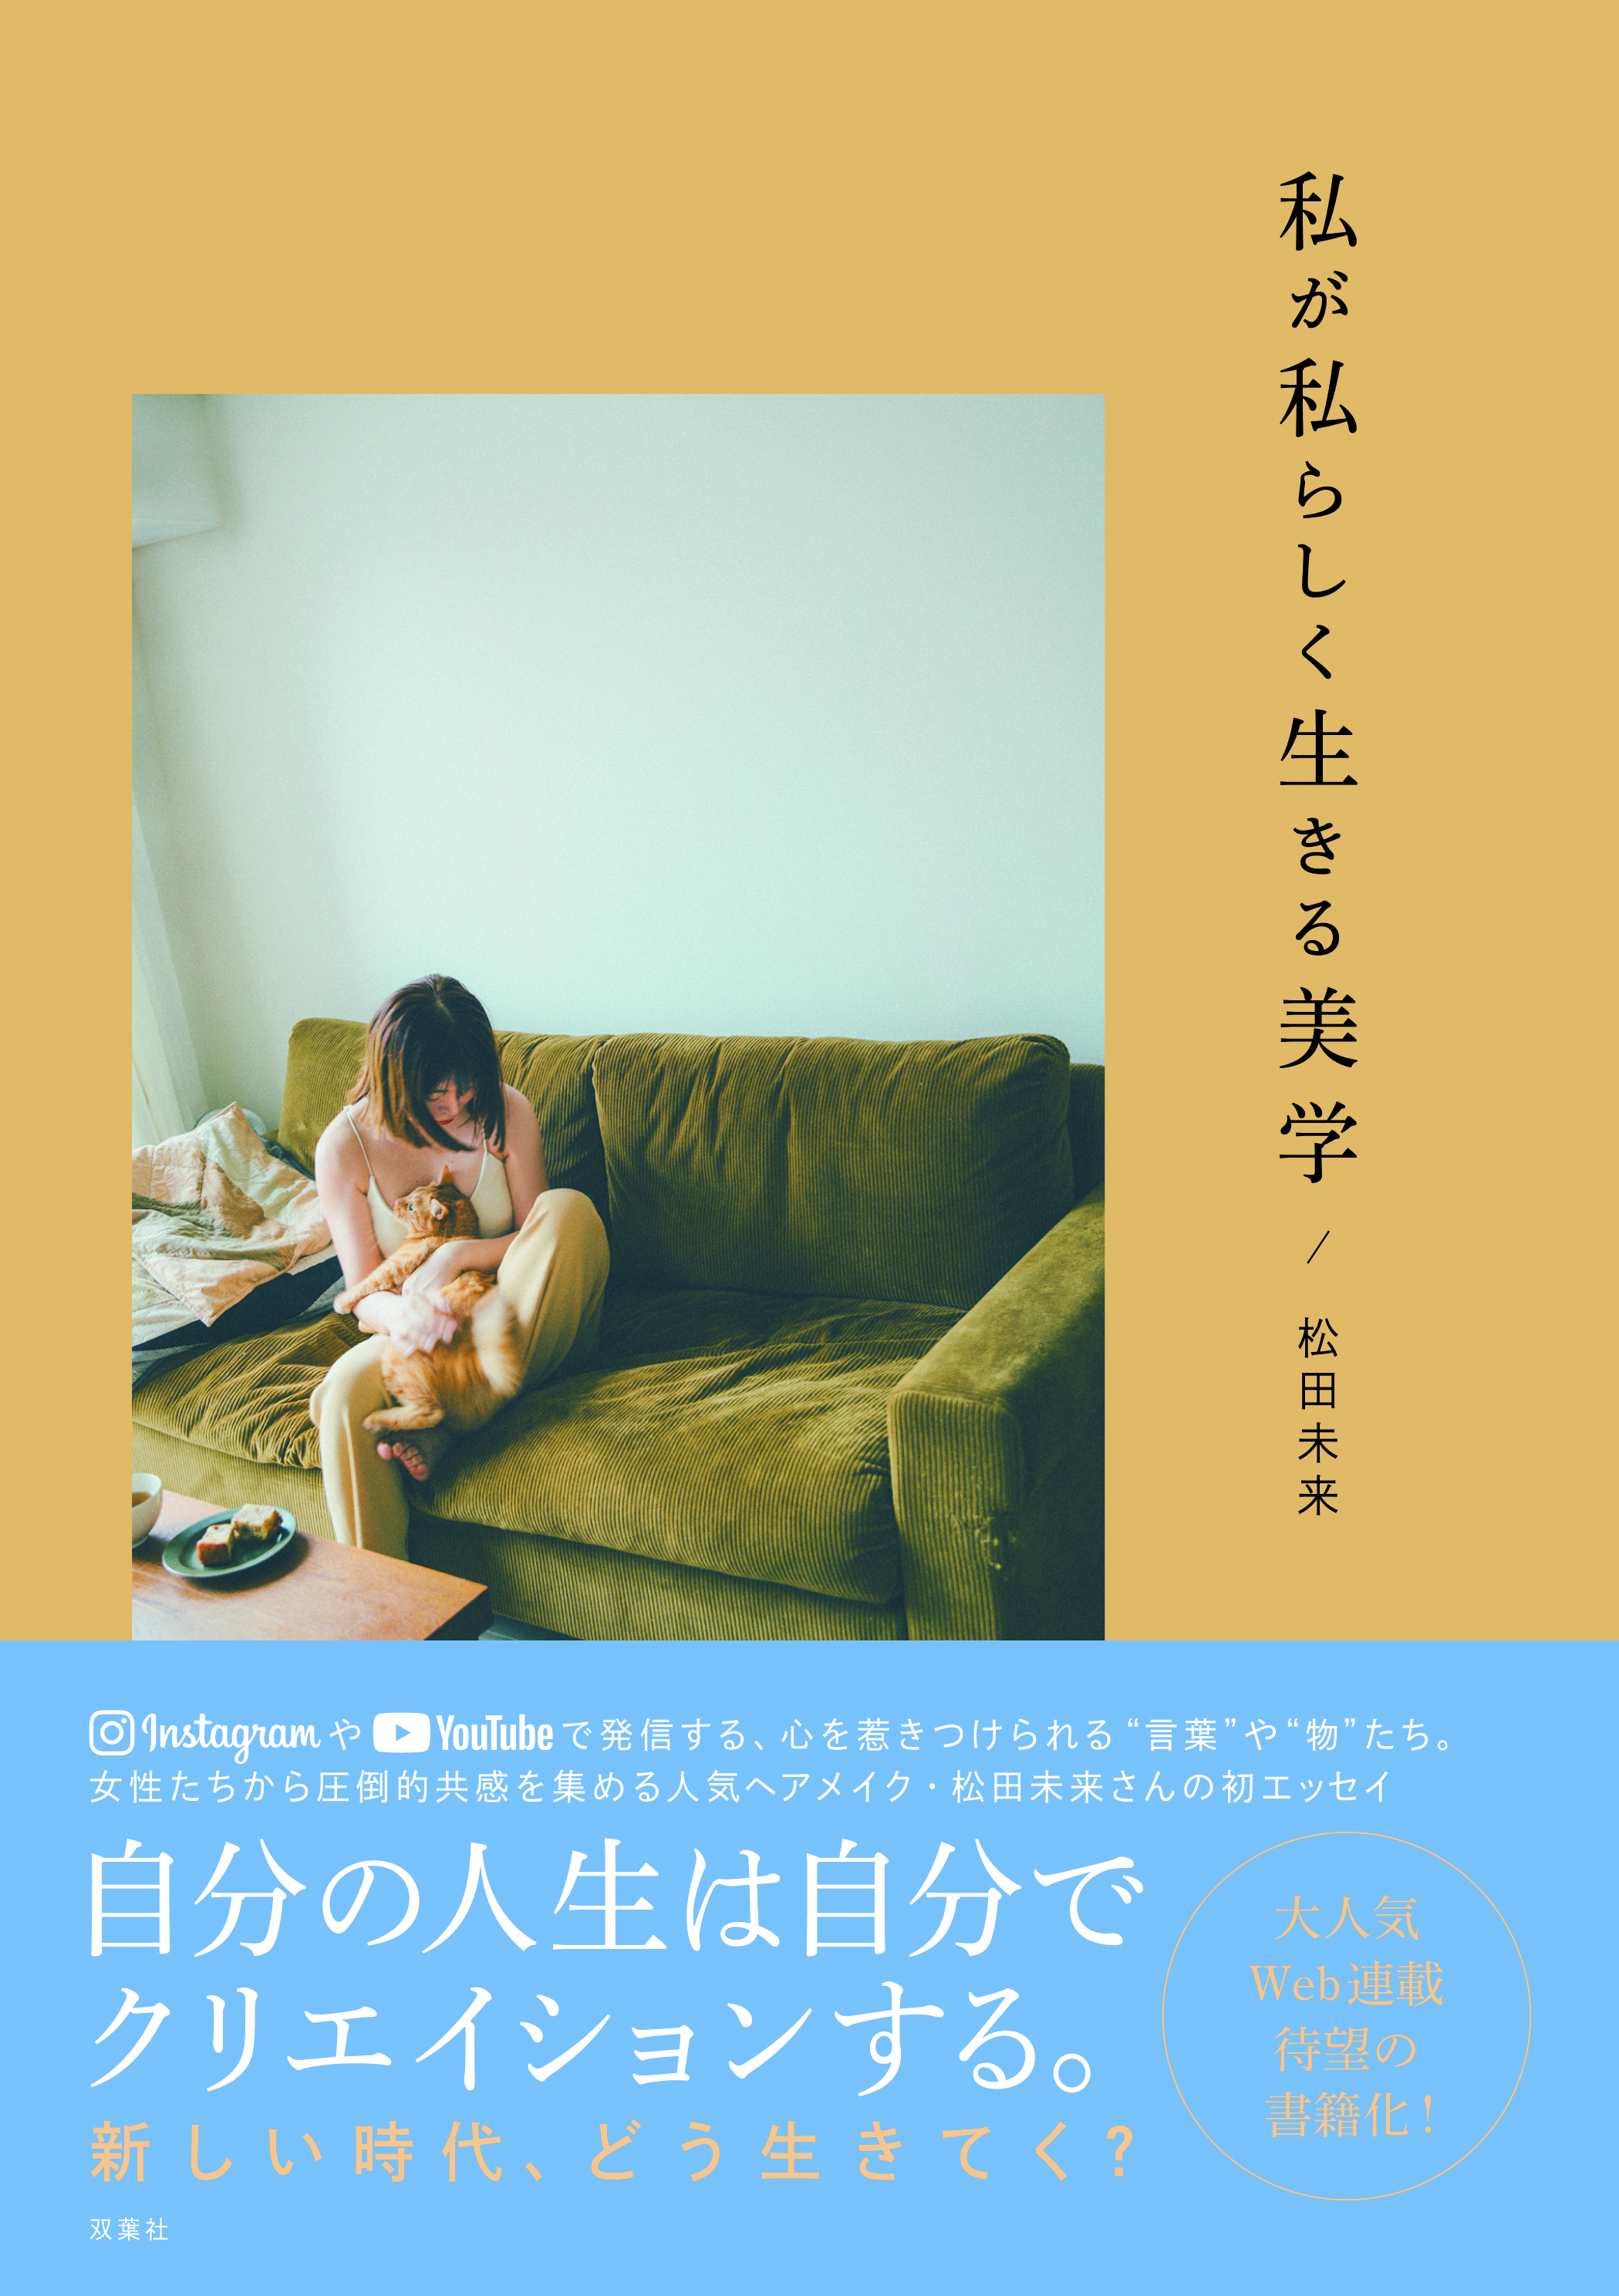 Snsで圧倒的共感 ヘアメイク松田未来さんの初エッセイ 私が私らしく生きる美学 株式会社双葉社のプレスリリース